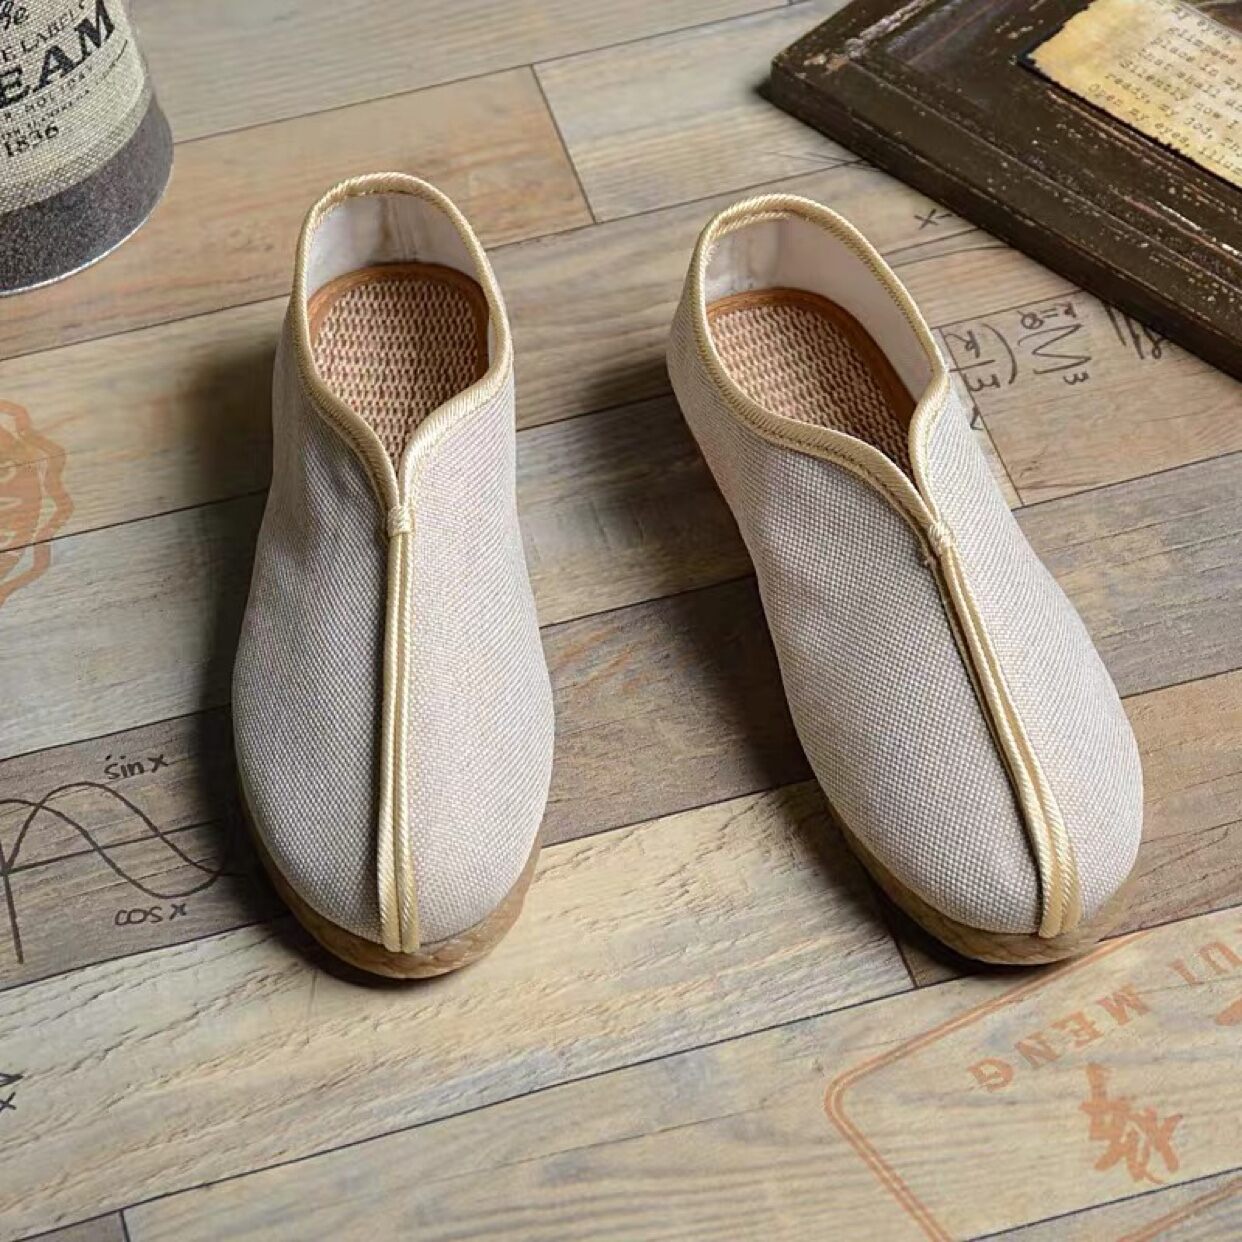 Những đôi giày Nam Vintage không chỉ đơn thuần là món phụ kiện, mà còn mang trong nó lịch sử và phong cách riêng biệt. Với những thiết kế độc đáo, giày Vintage sẽ khiến bạn trở nên nổi bật hơn trong mắt mọi người. Nhanh chân đến với hình ảnh liên quan để khám phá thêm các mẫu đẹp nhất.